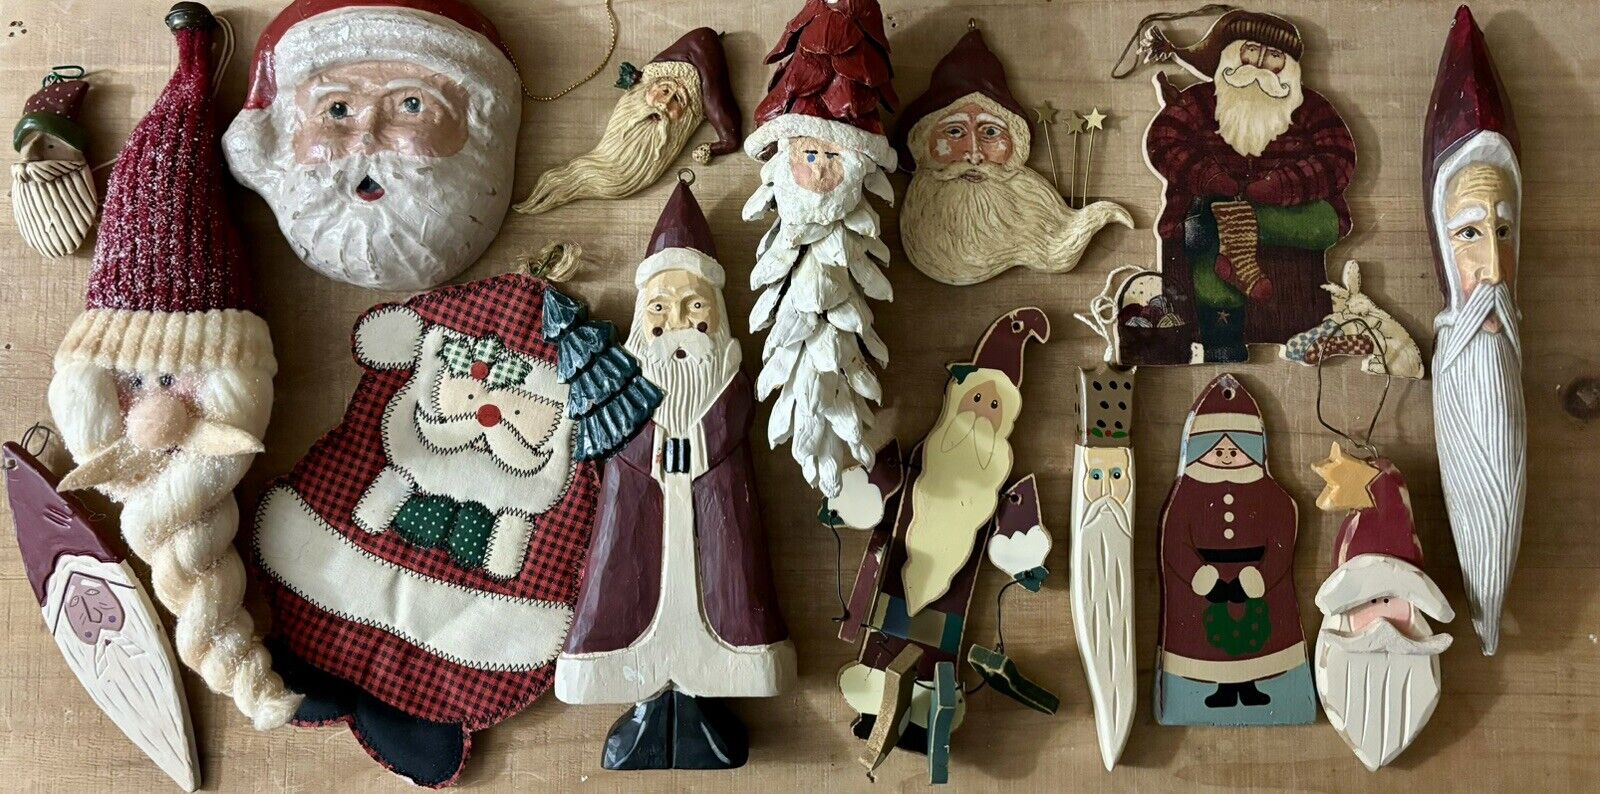 Primitive Santa Claus Christmas Ornaments 15-Piece Lot